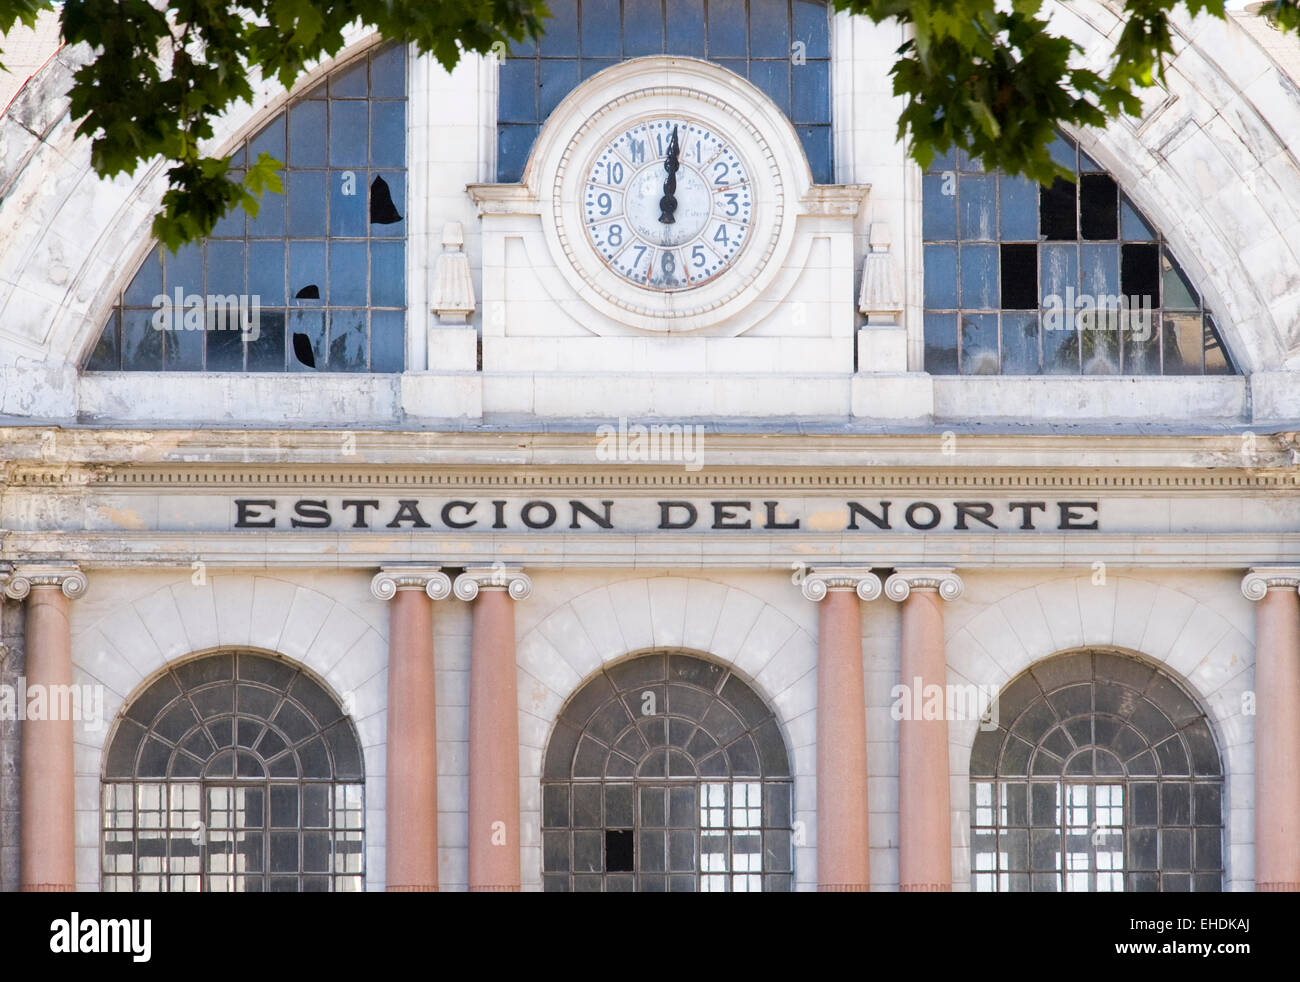 Estacion del Norte in Madrid Spain Stock Photo